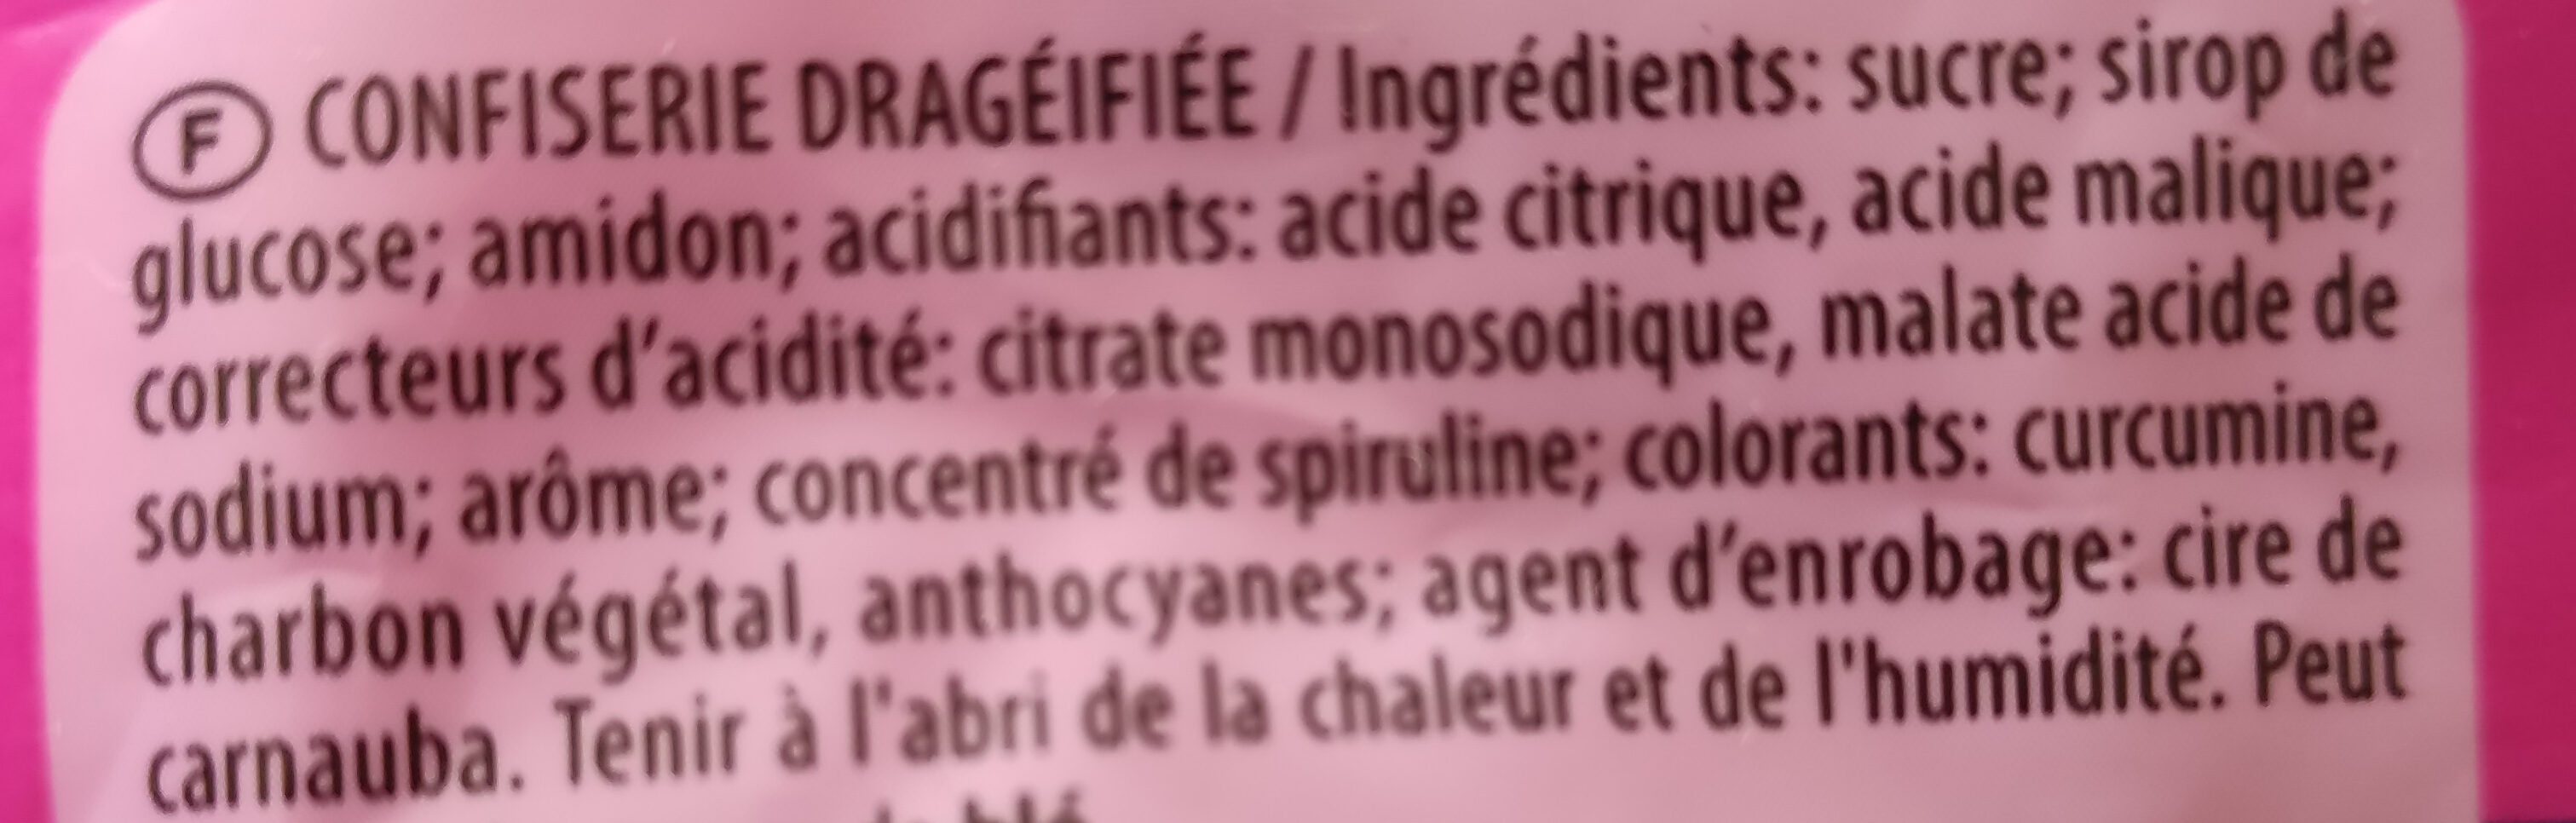 Dragibus - Ingrediënten - fr